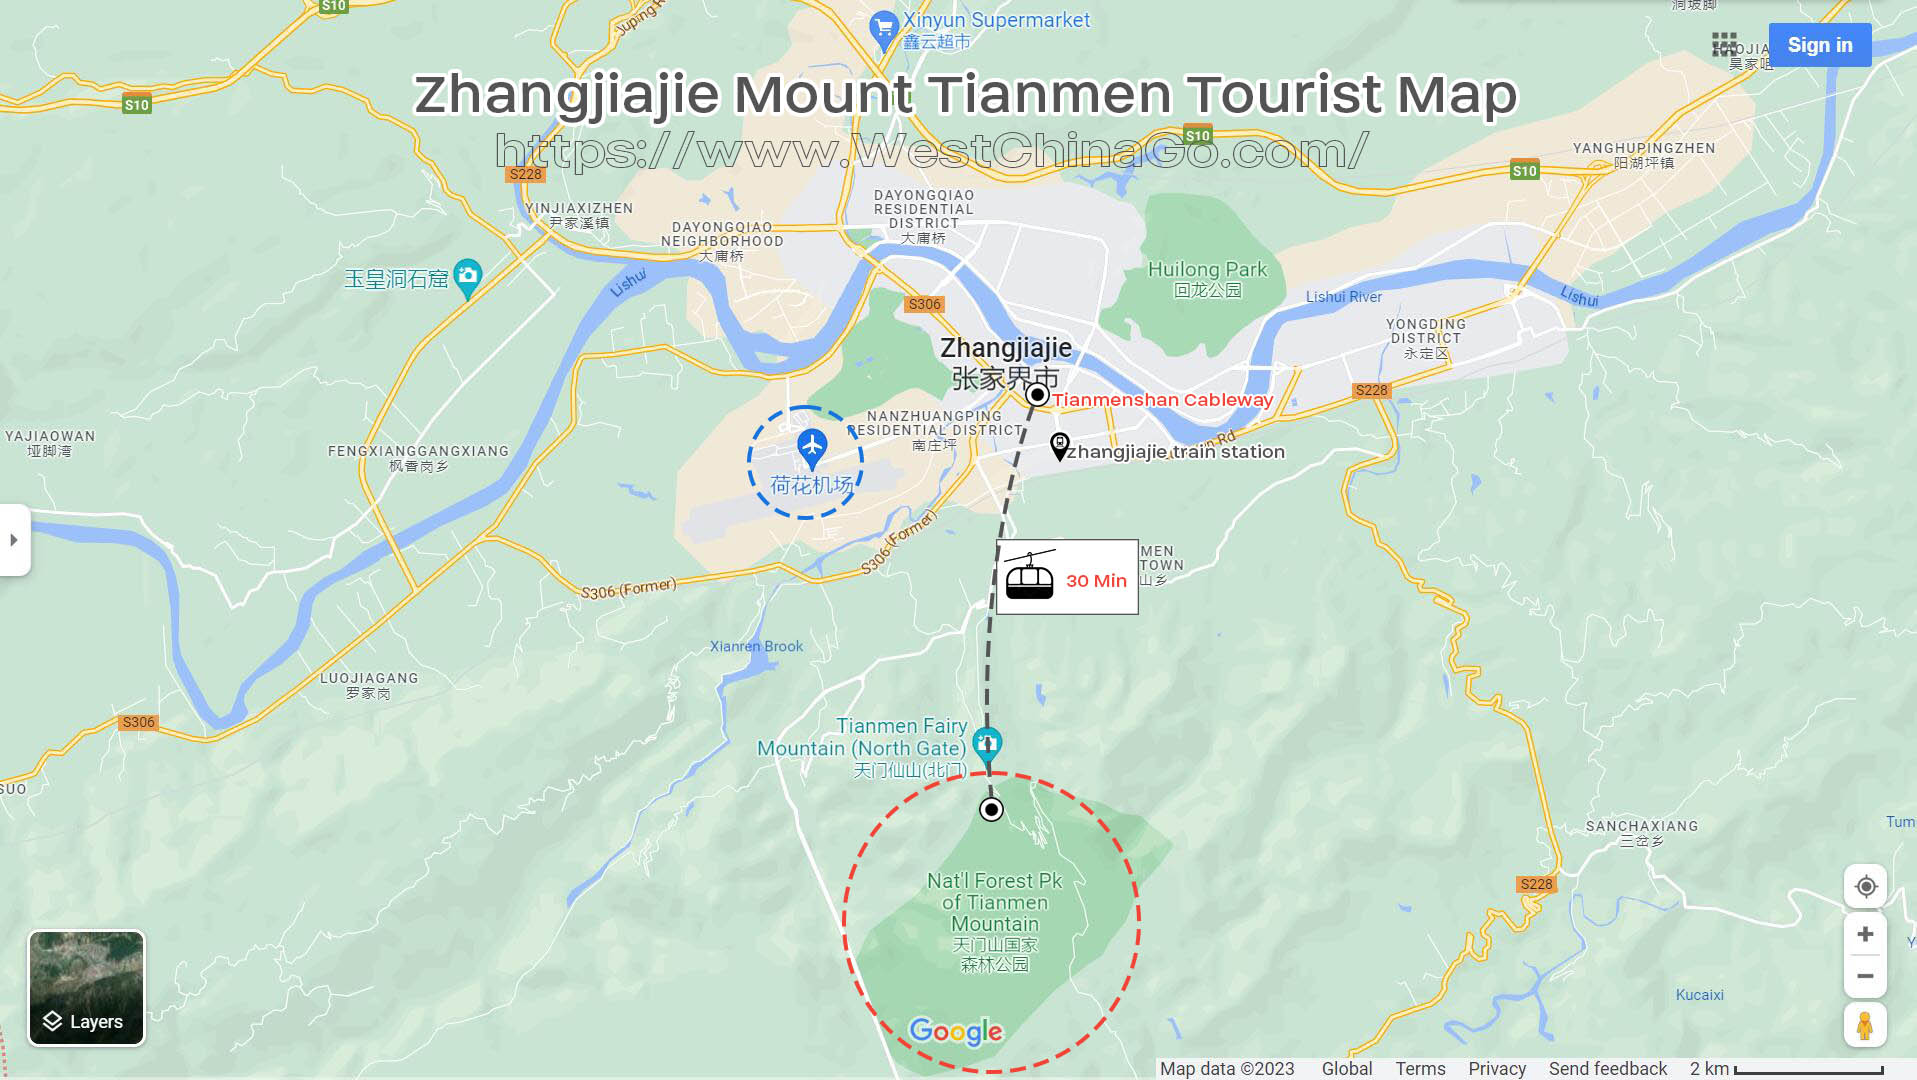 ZhangJiaJie Mount Tianmen Tourist Map